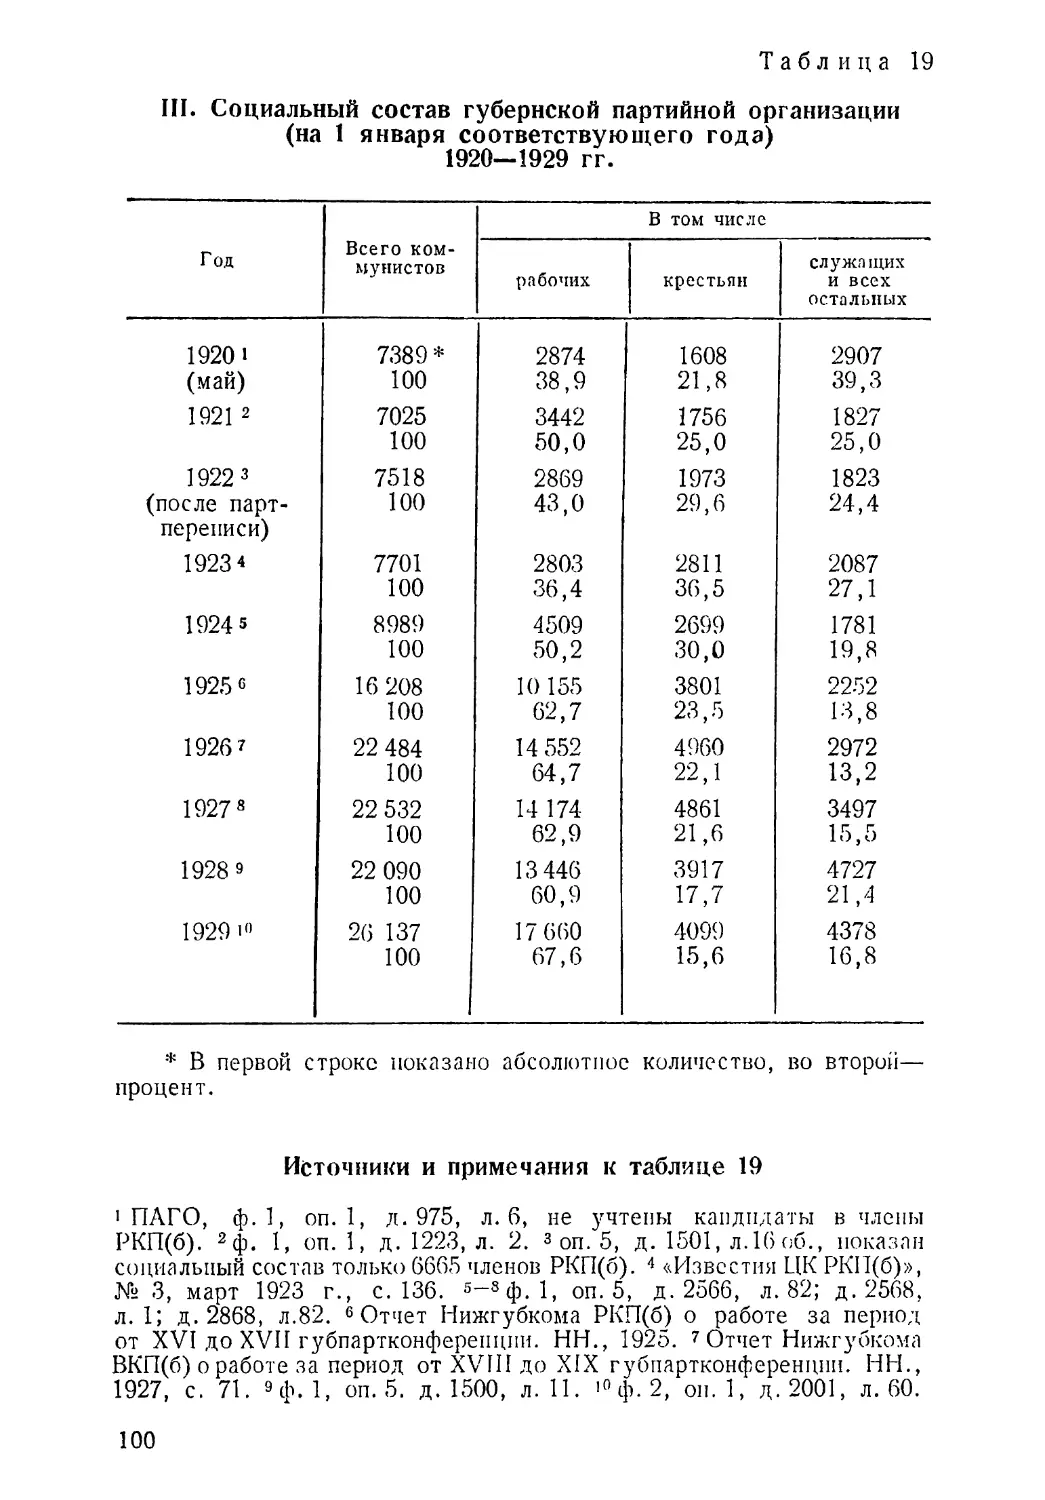 1920—1929 гг. Таблица 19